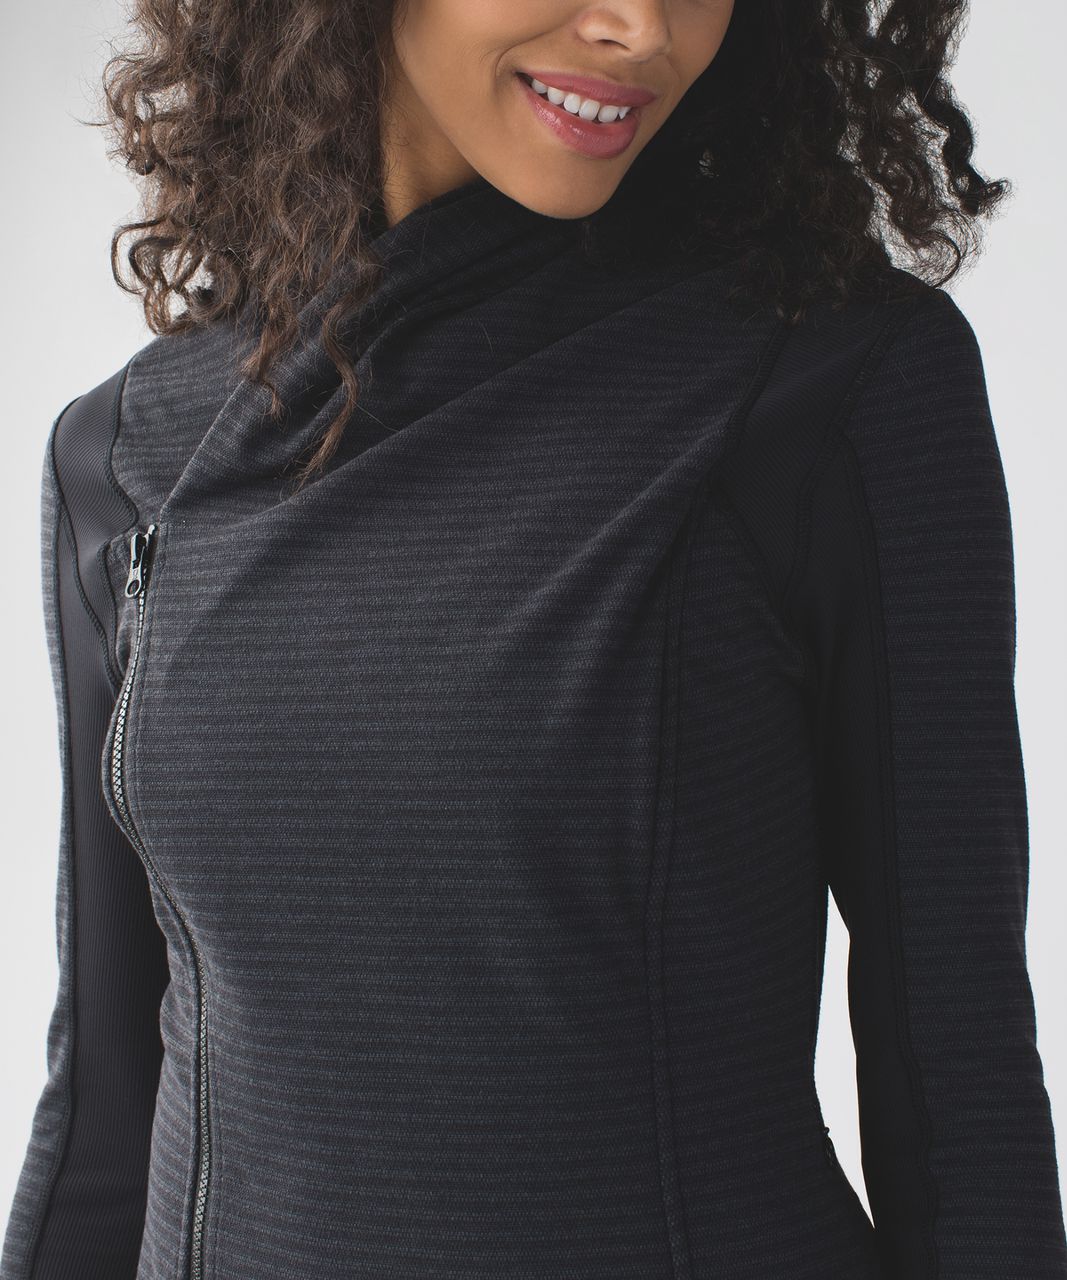 Lululemon Bhakti Asymmetrical Zipper Jacket. Pique Gray/Black